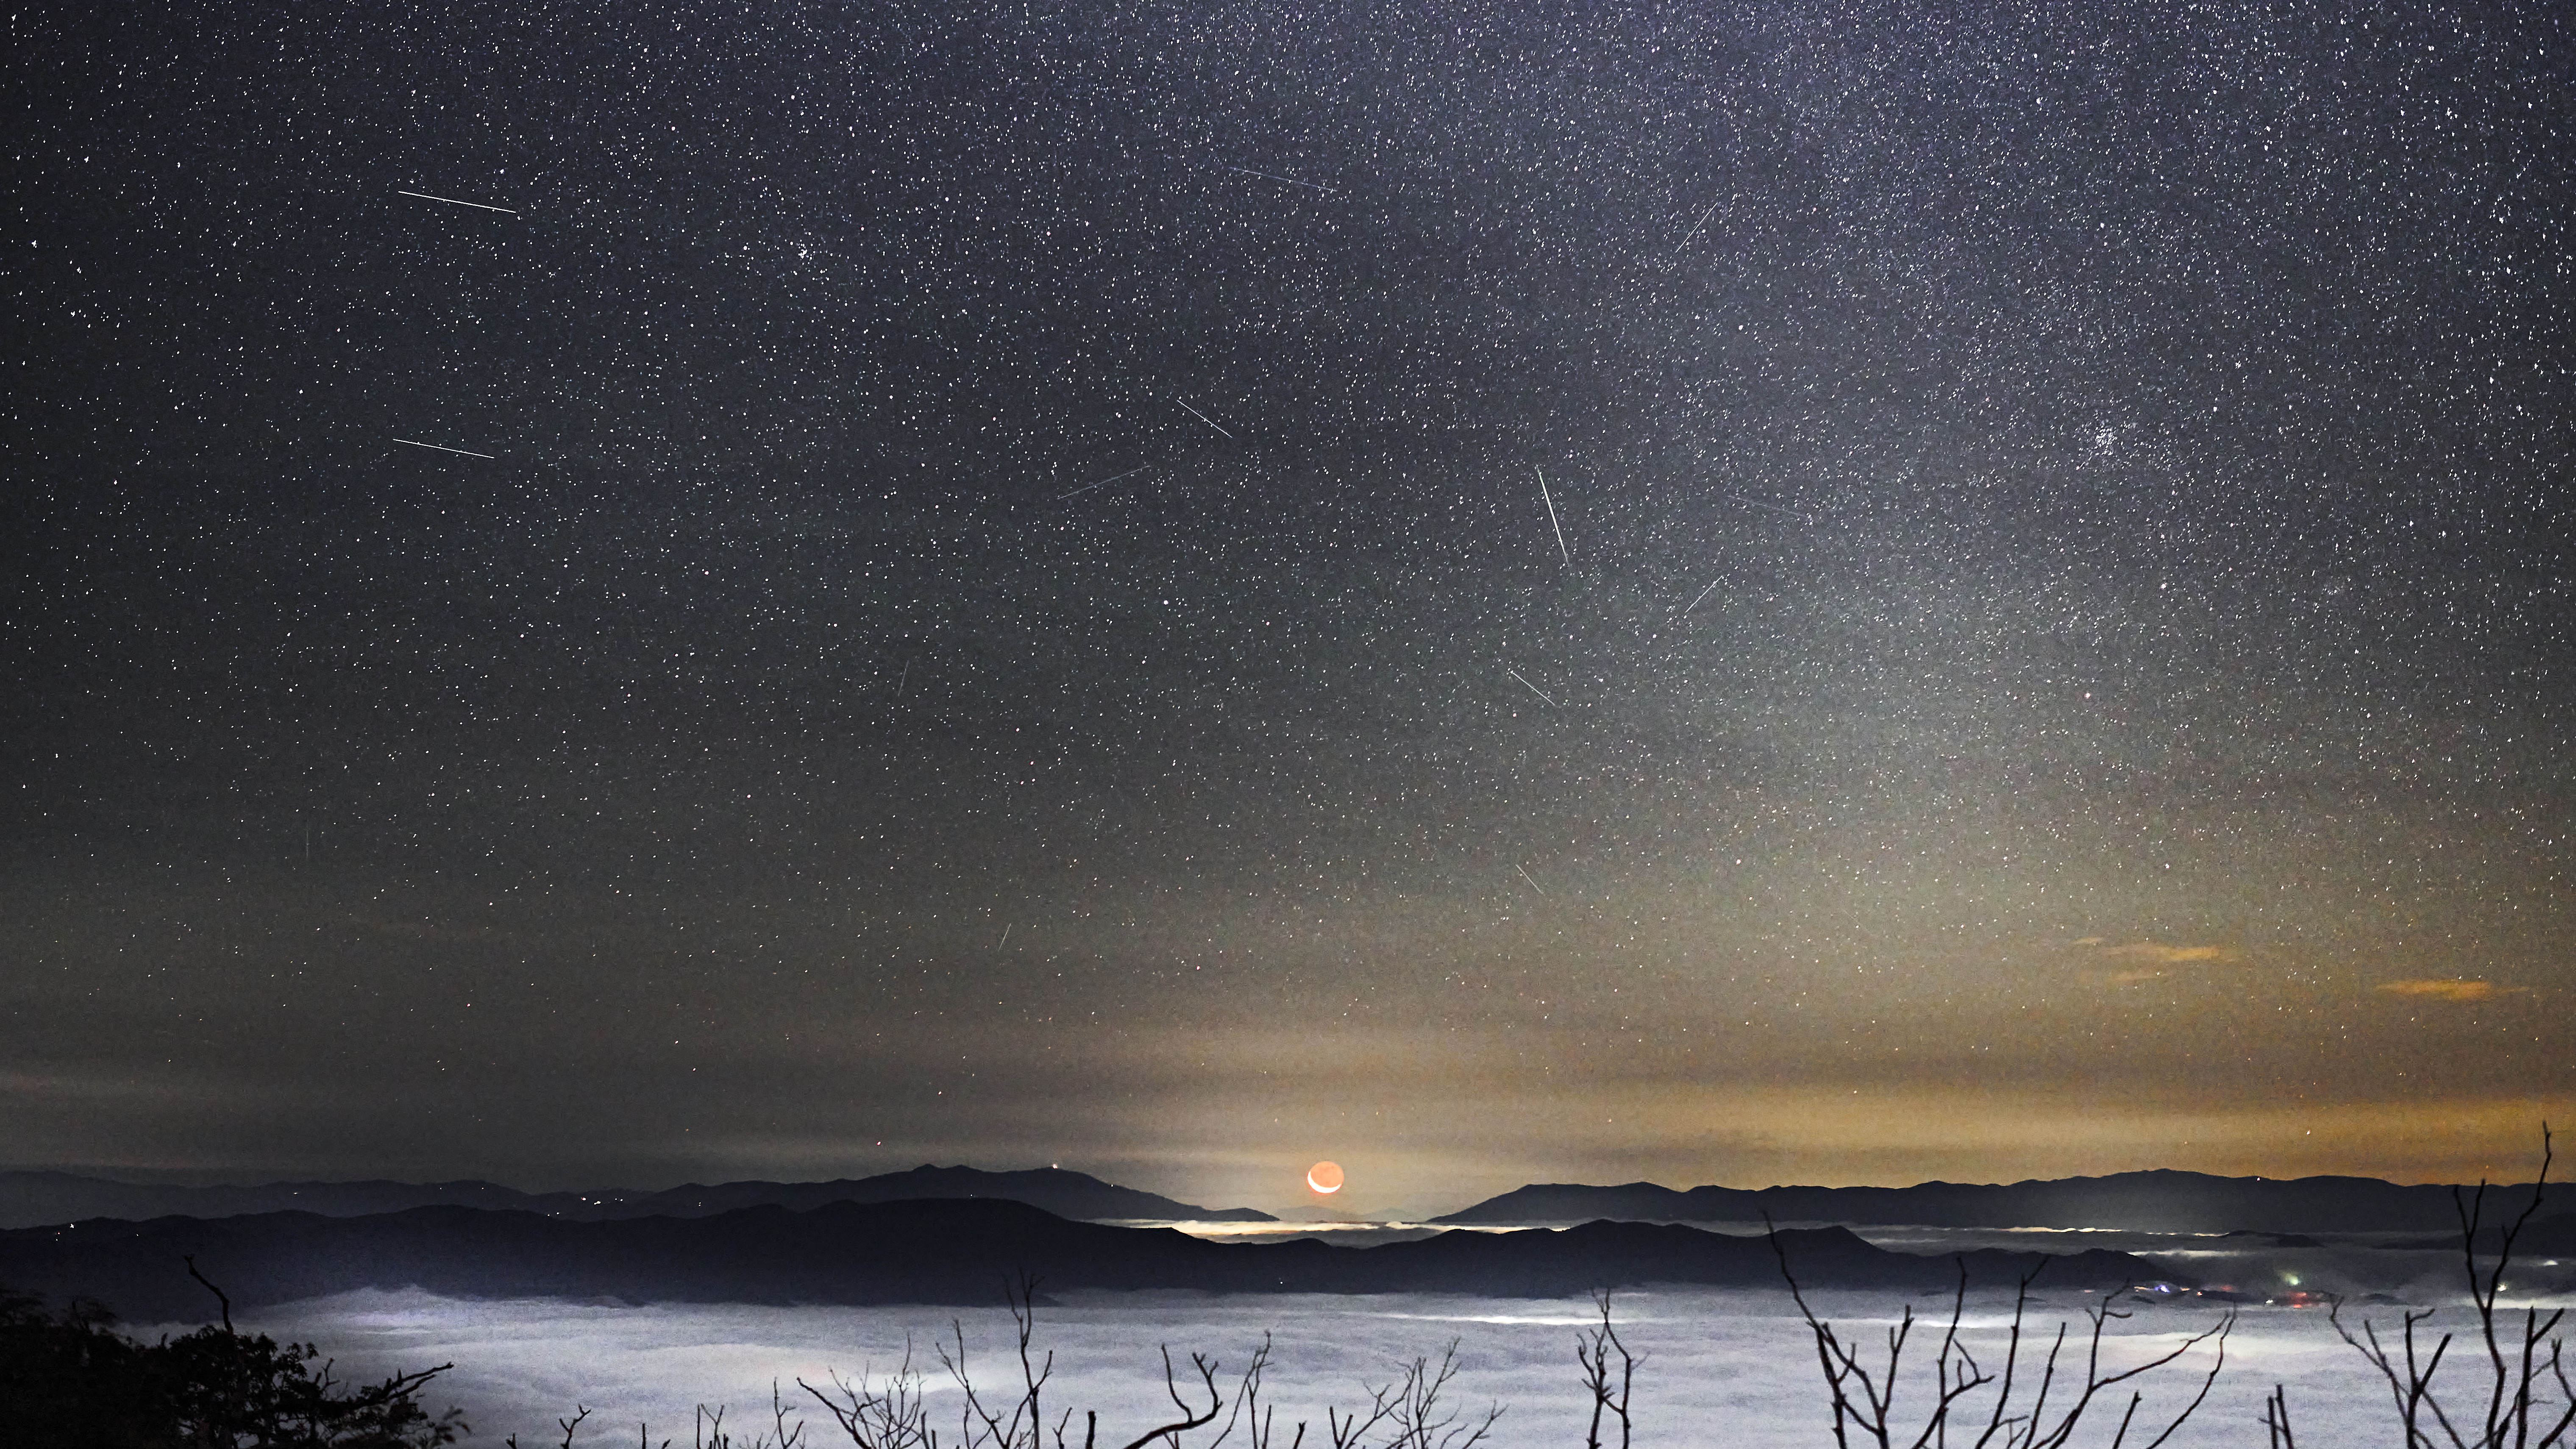 Een meteorenregen wordt afgebeeld tegen een sterrenhemel en een schilderachtige voorgrond